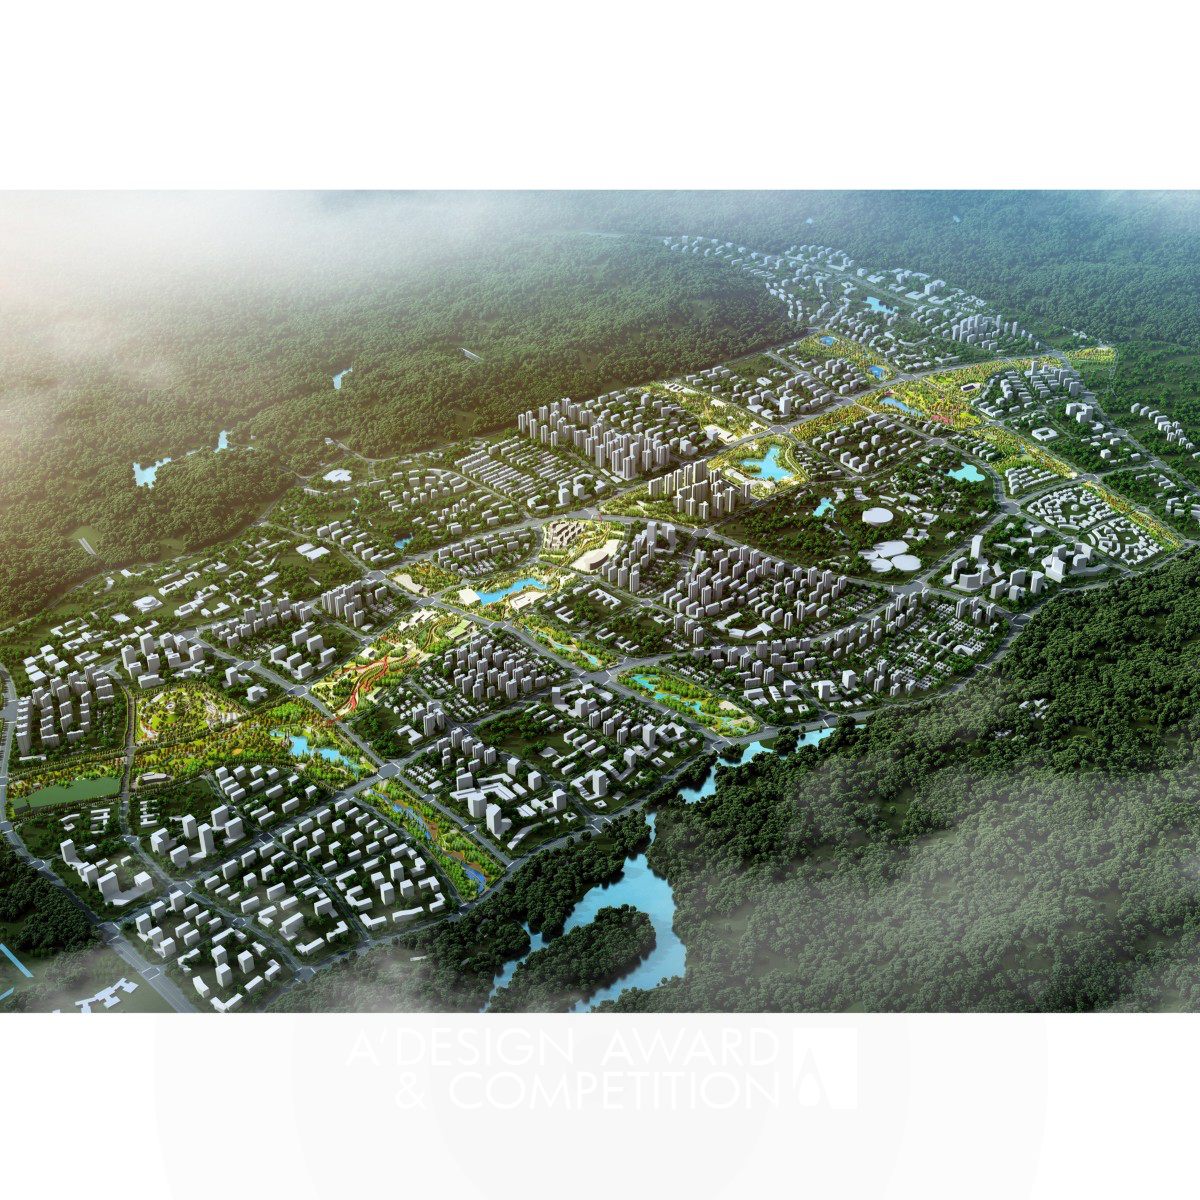 El Corredor Esmeralda Poético de la Nueva Ciudad de Taiping: Un Oasis Urbano